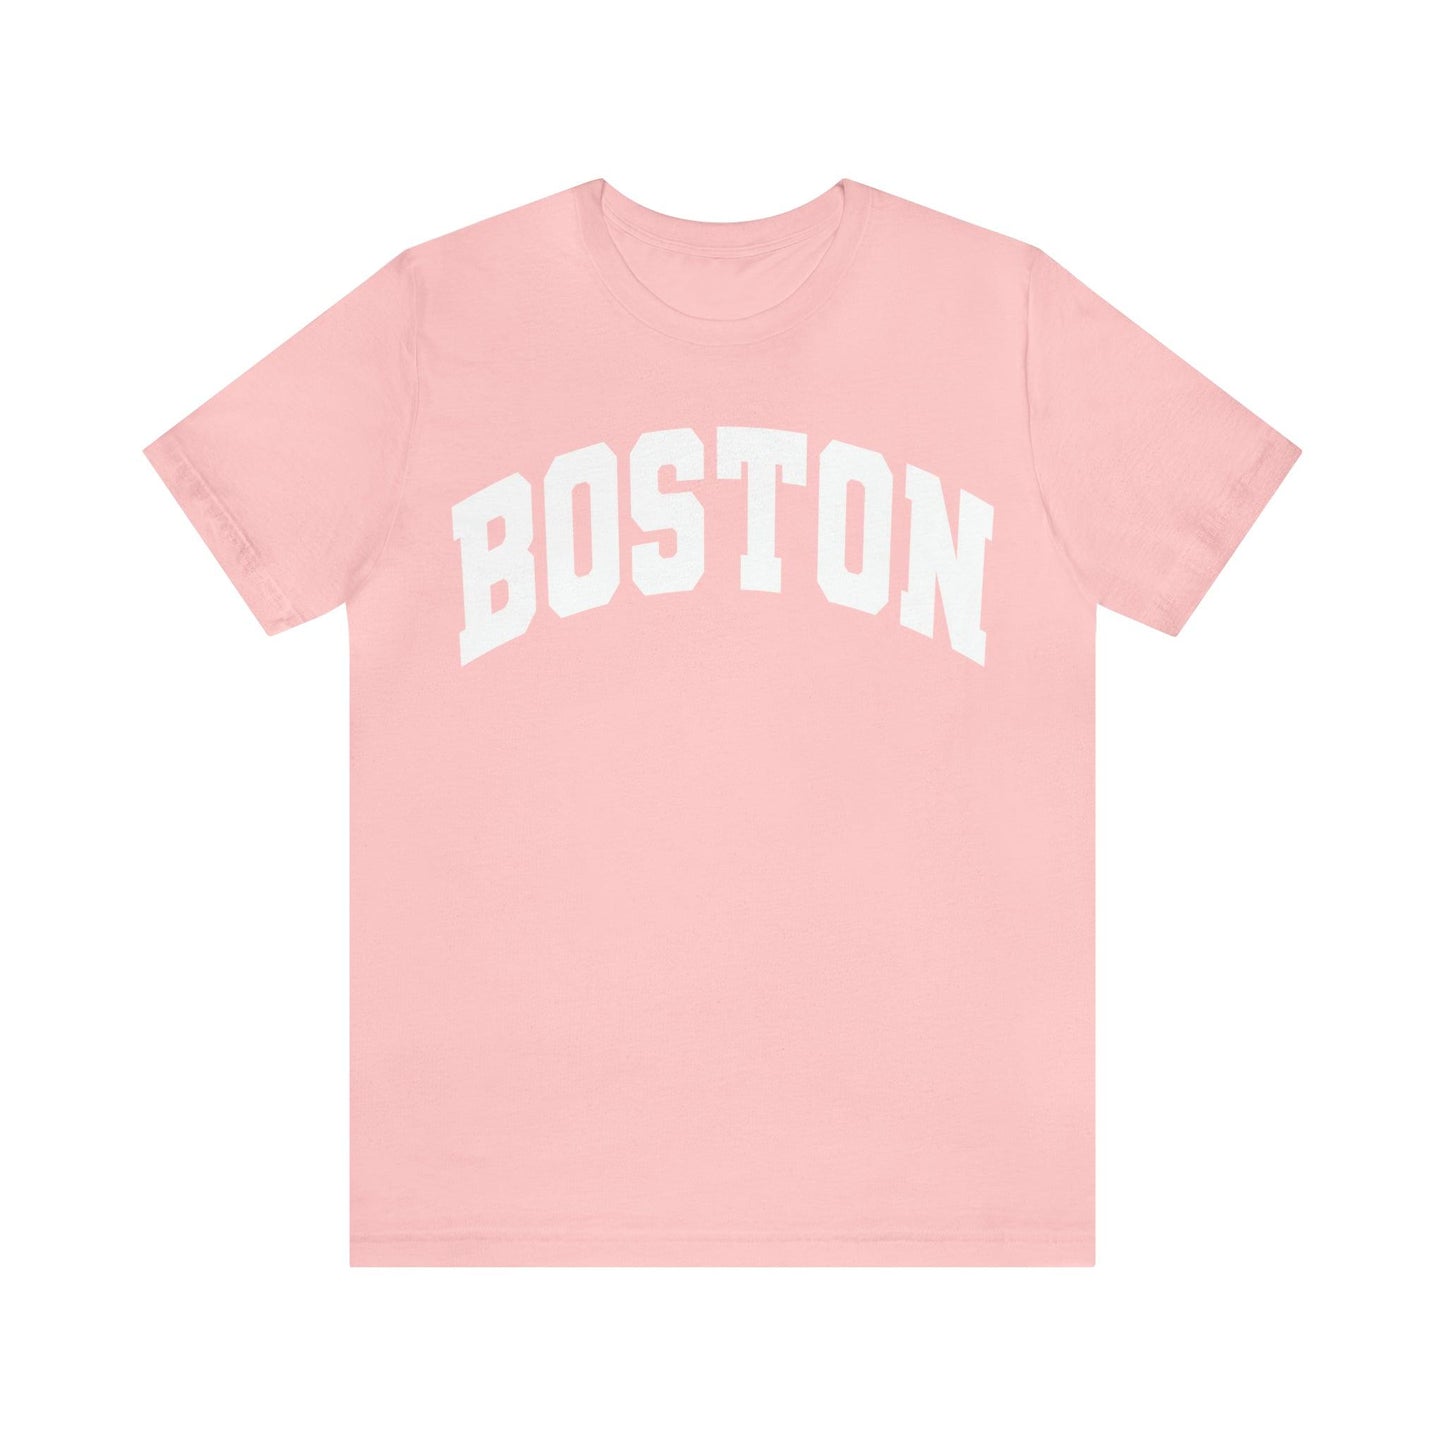 Boston Massachusetts Shirt, Boston Souvenir, Boston shirt, Boston Tshirt, Boston Vacation shirt